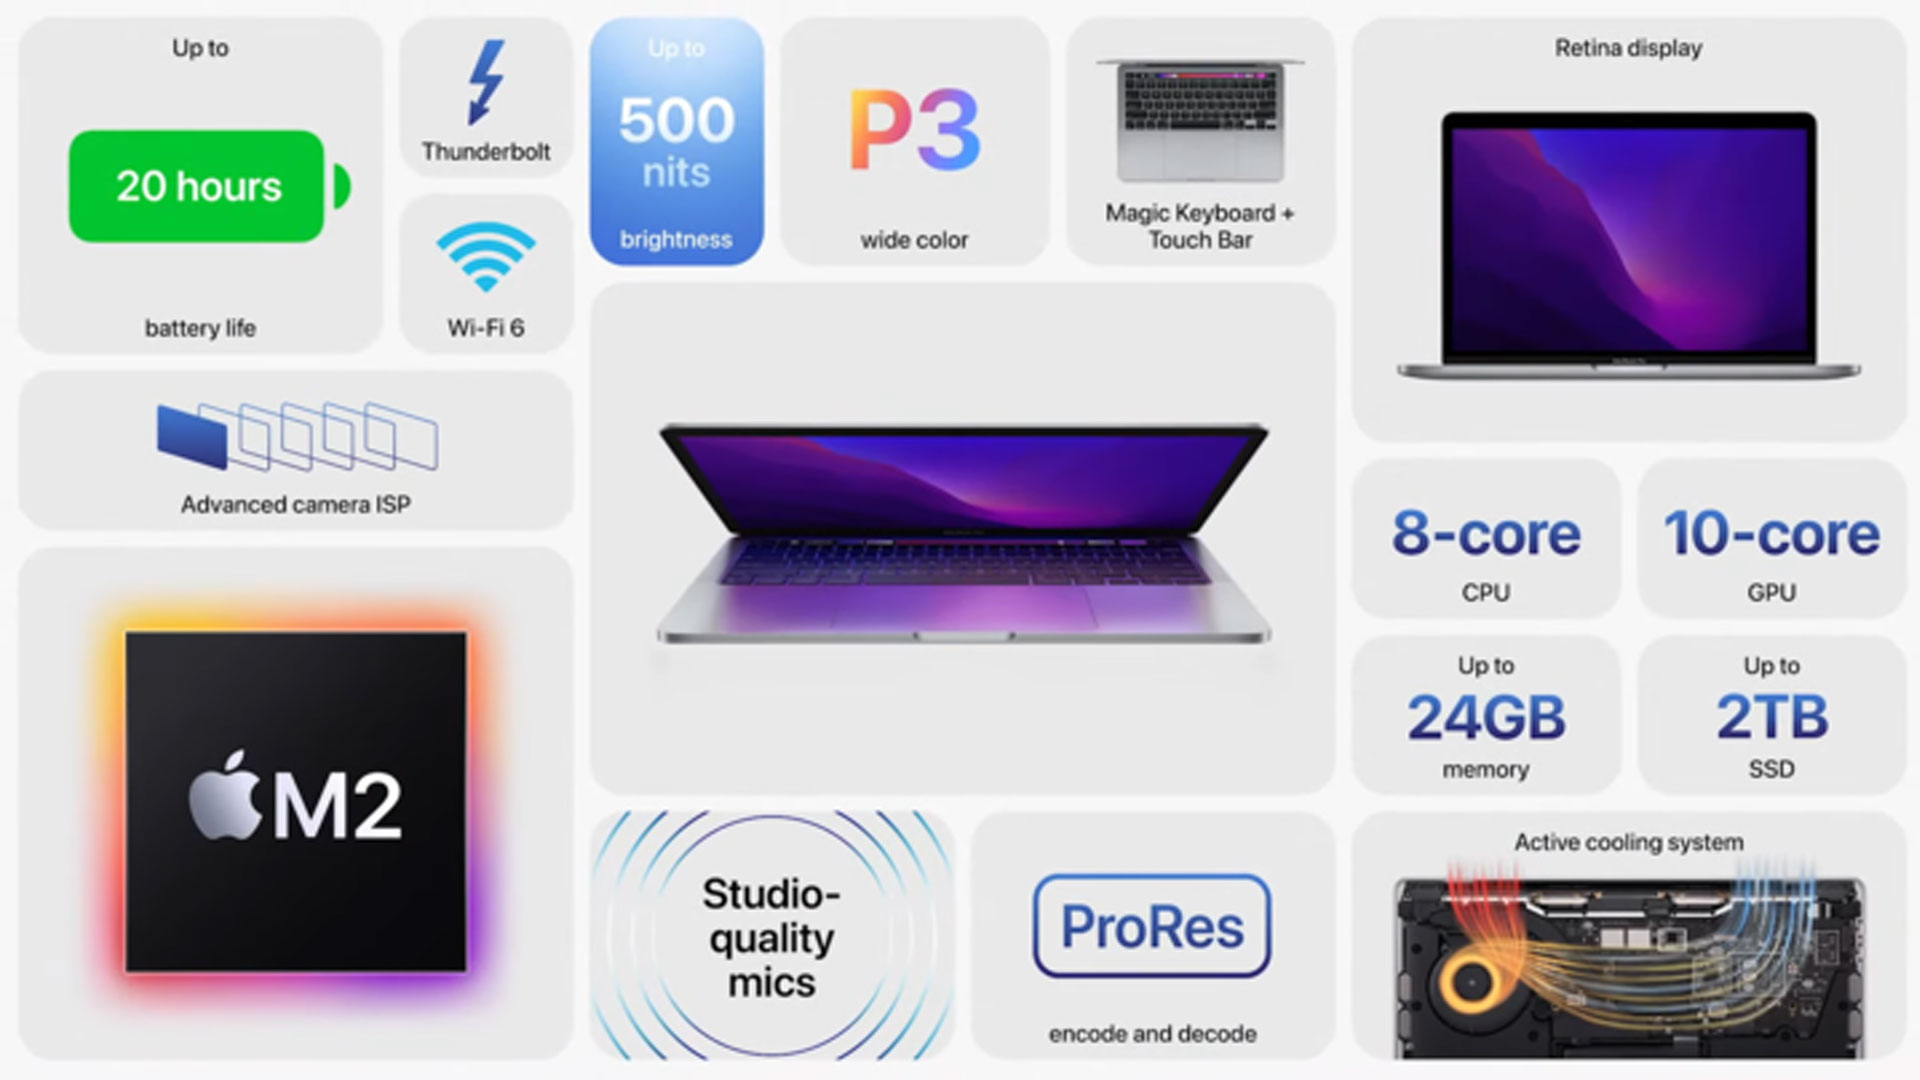 macbook pro features